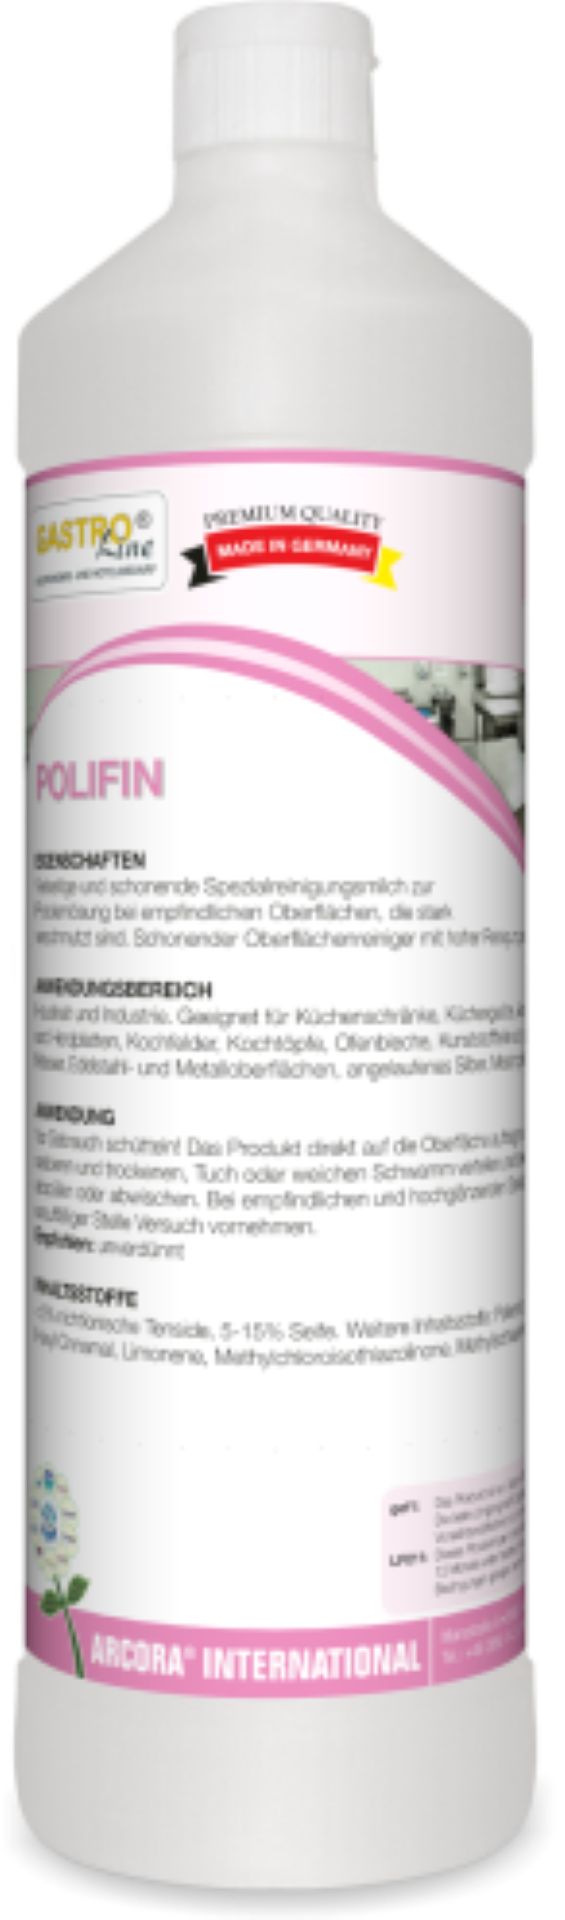 Polifin | Poliermilch | 1 Liter Flasche